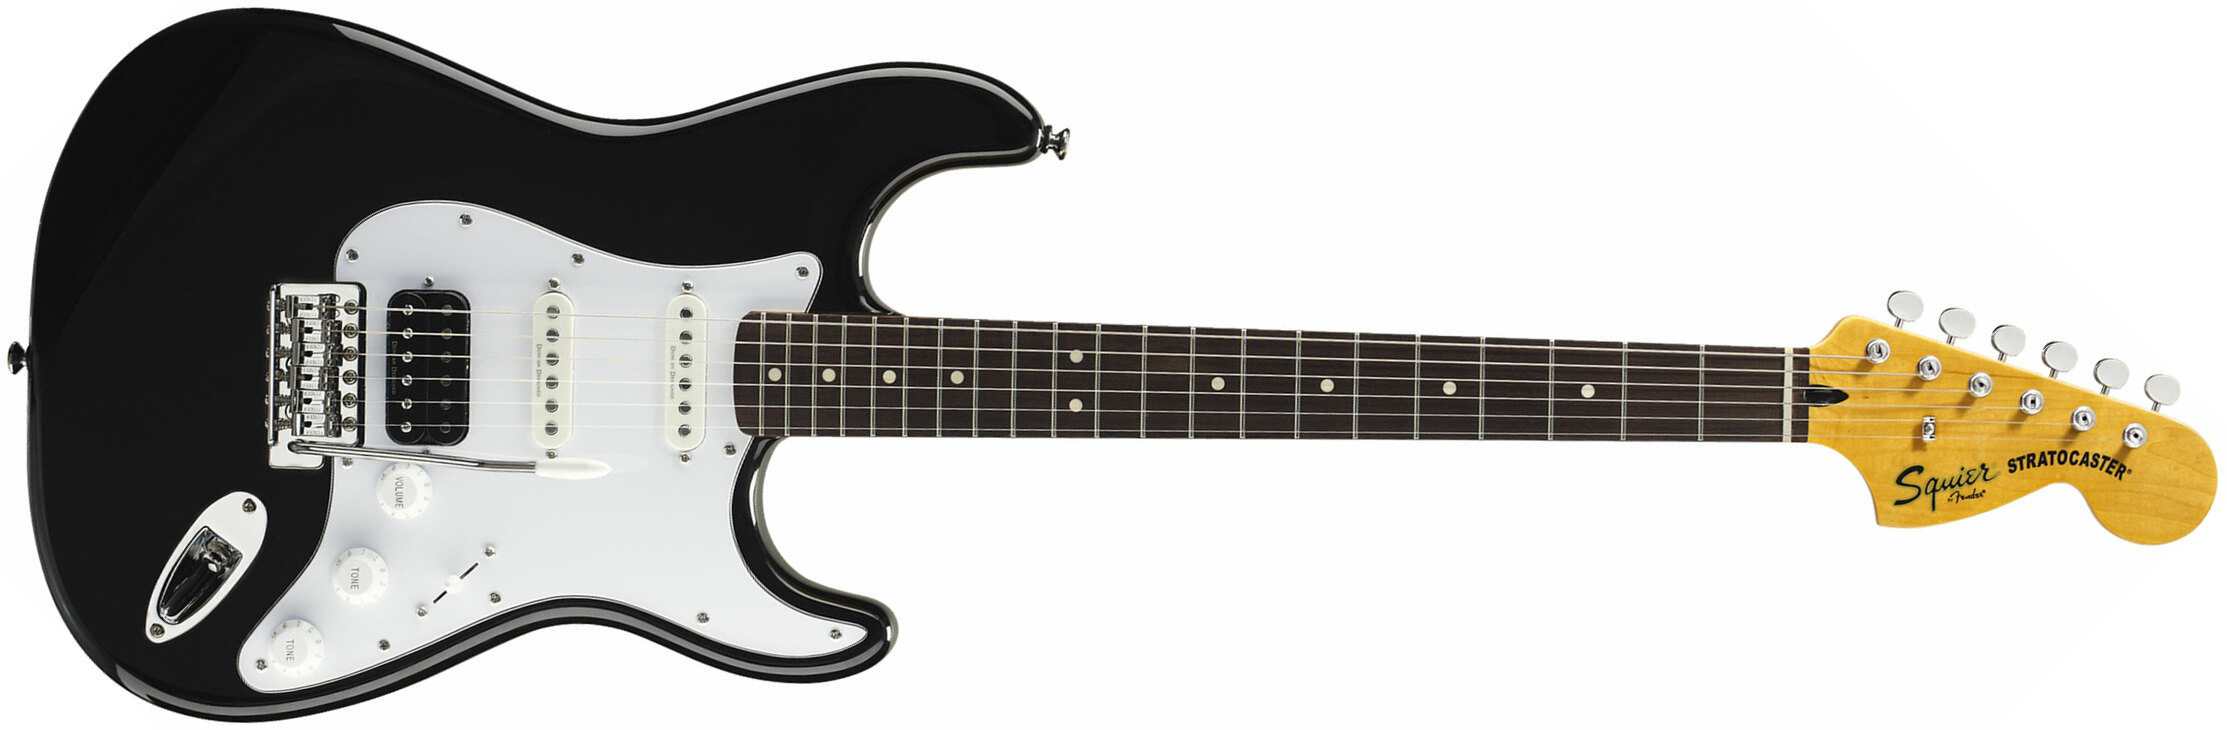 Squier Strat Vintage Modified Hss Lau - Black - Str shape electric guitar - Main picture